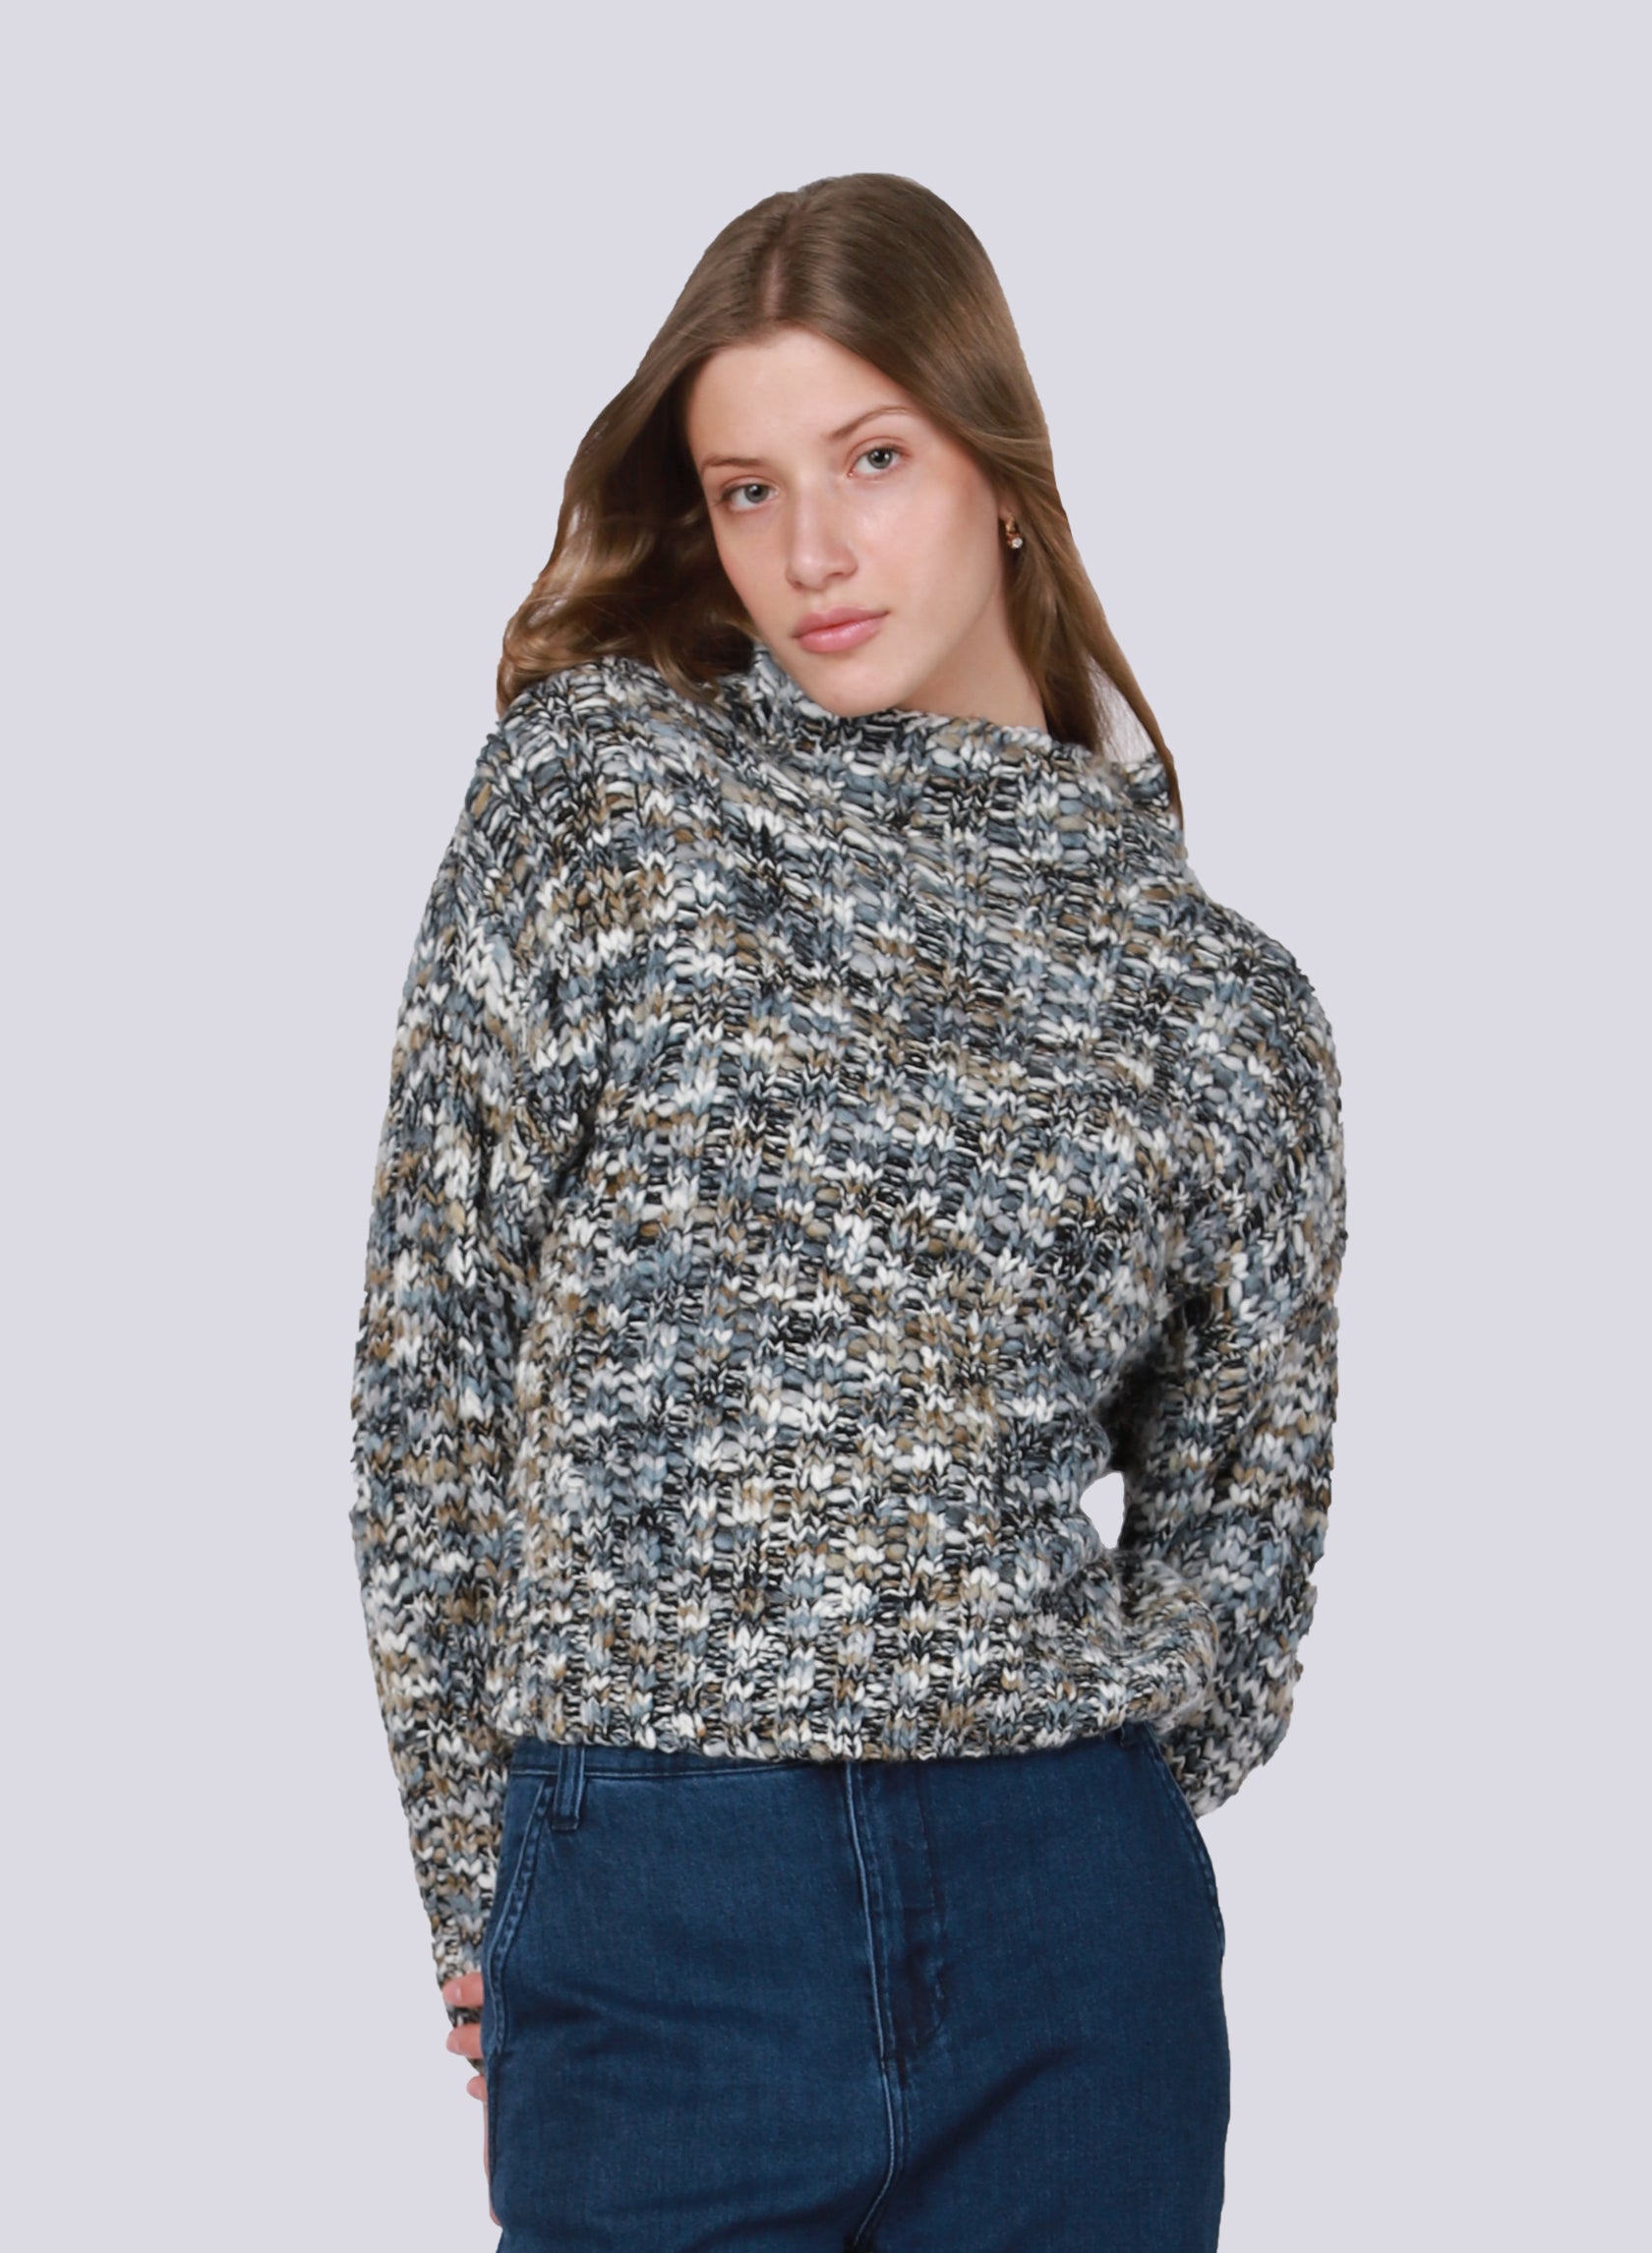 Textured Stitch Sweater